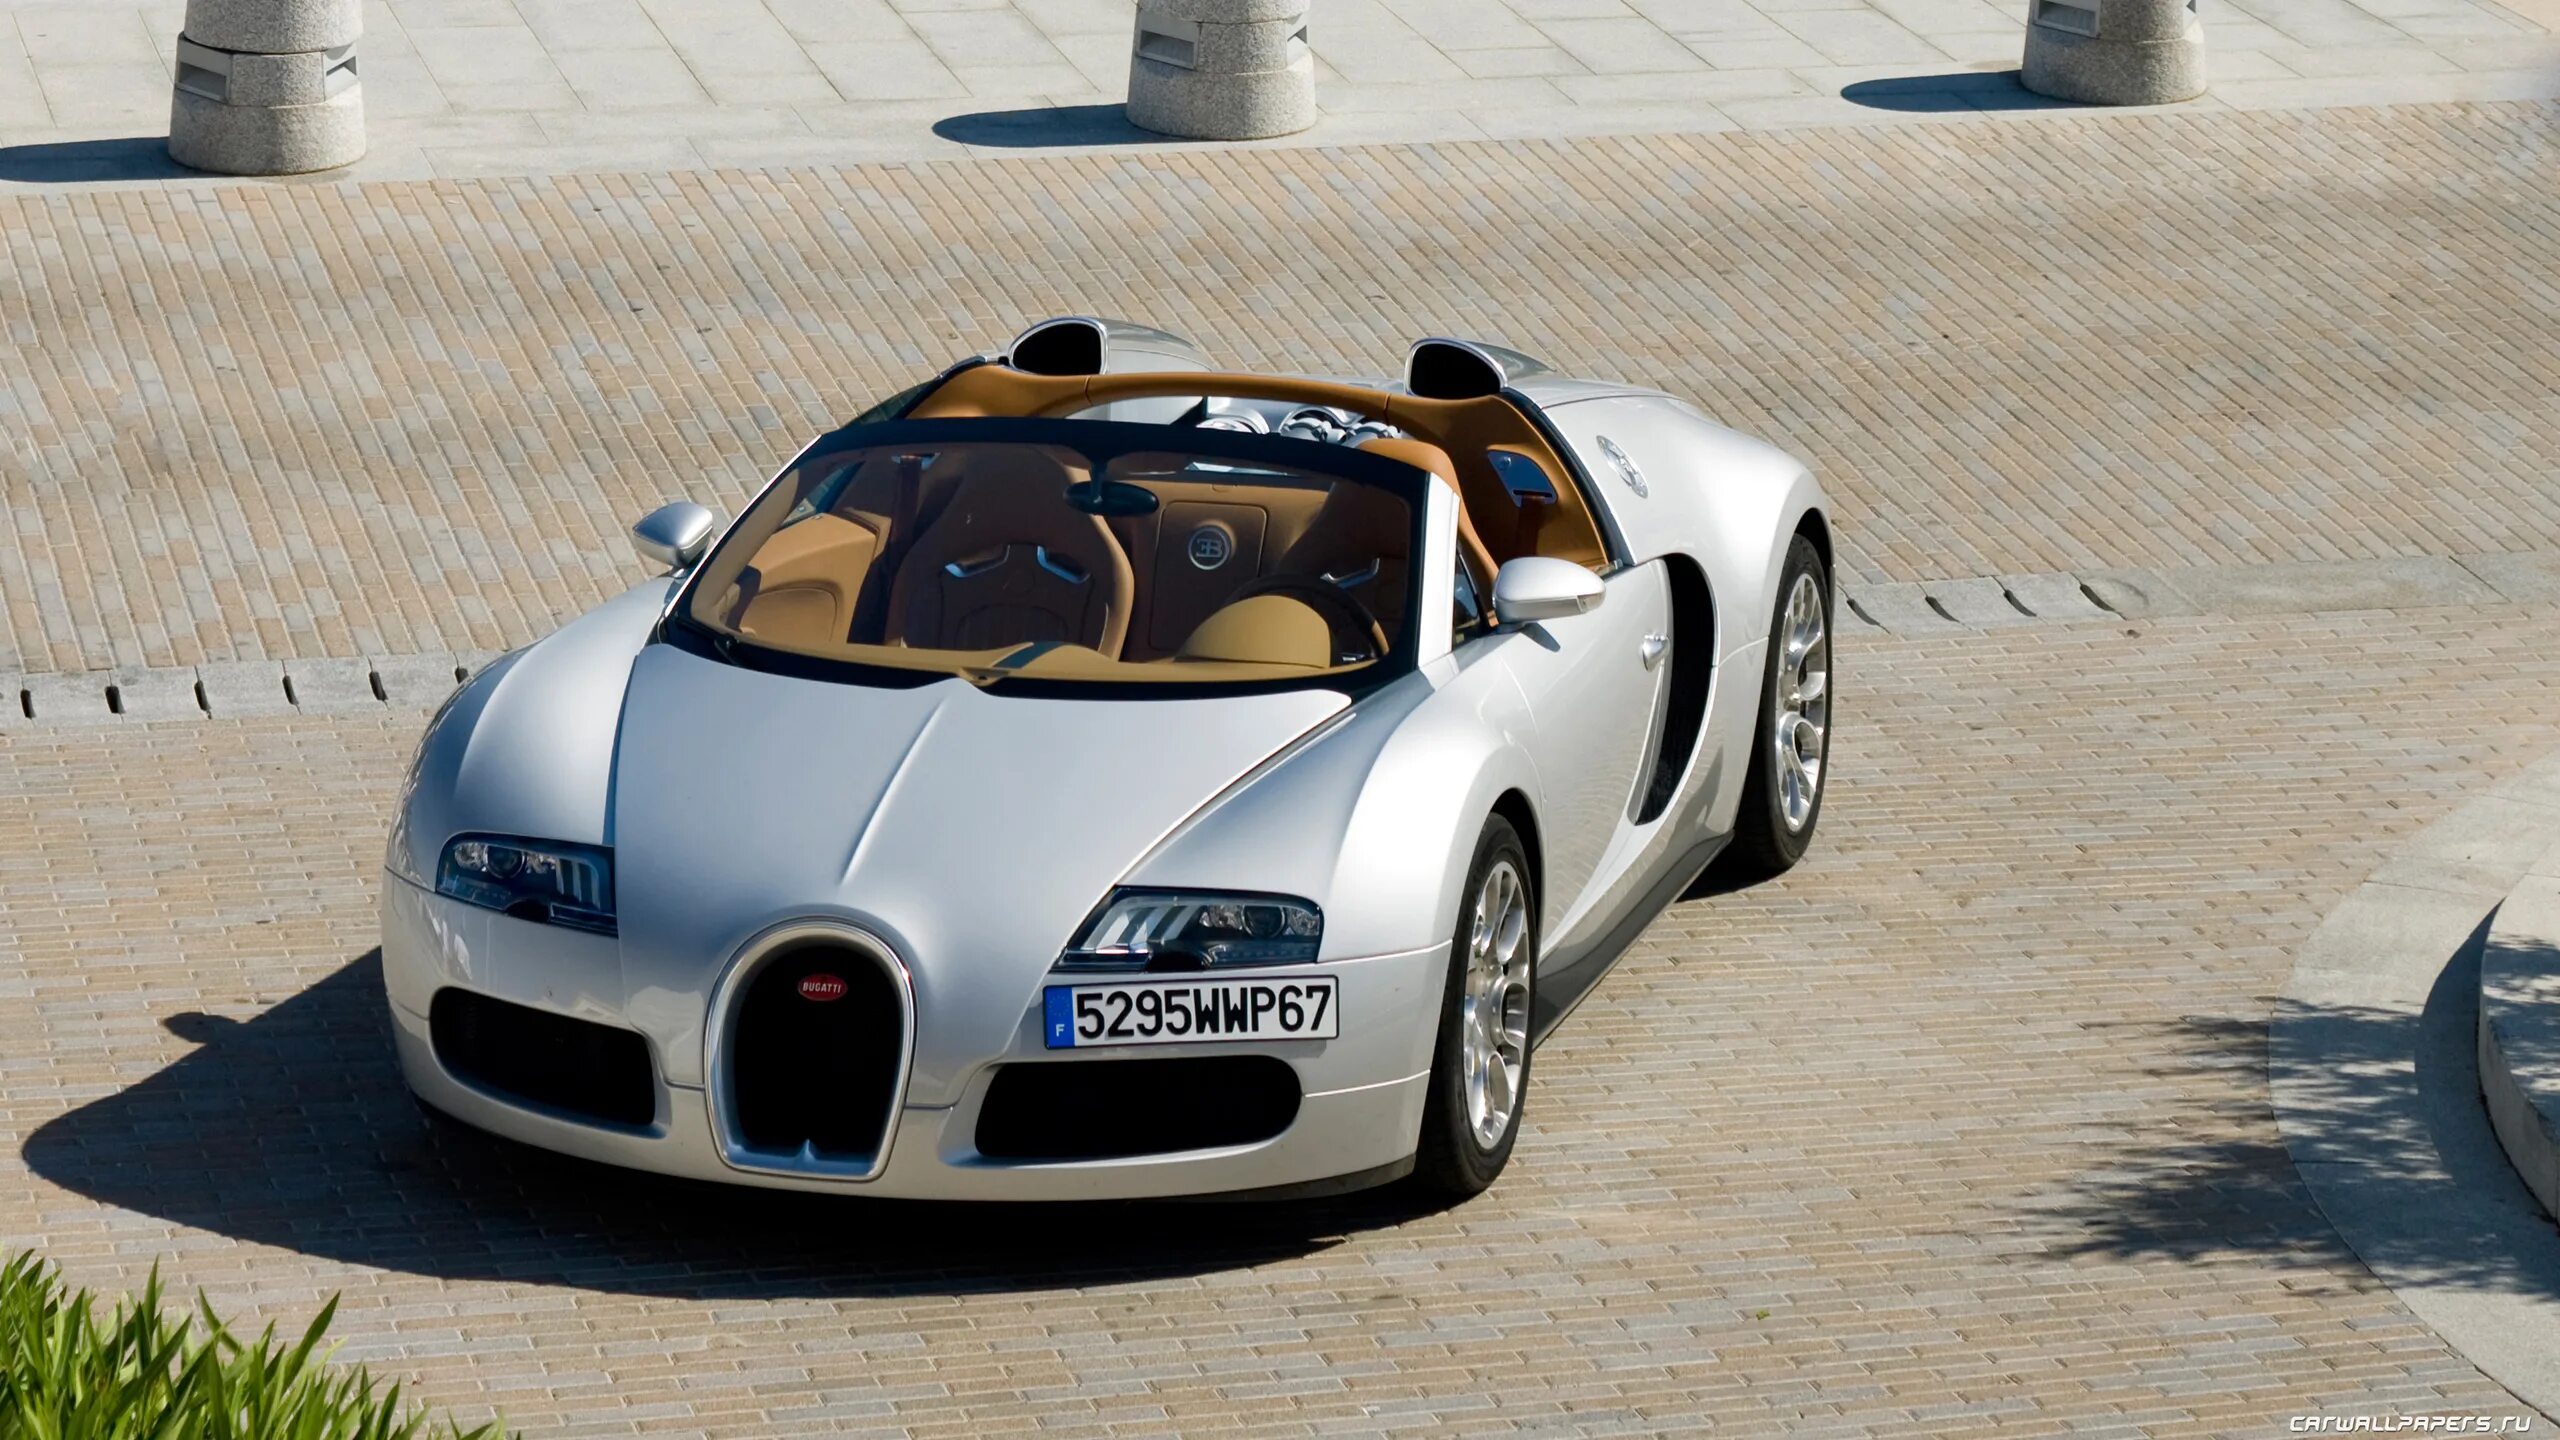 Bugatti veyron grand. Bugatti Veyron 16.4 Grand Sport. Bugatti Veyron Grand Sport (2009). Bugatti Veyron 16.4 Grand Sport 2009. 2008 Bugatti Veyron 16.4 Grand Sport.